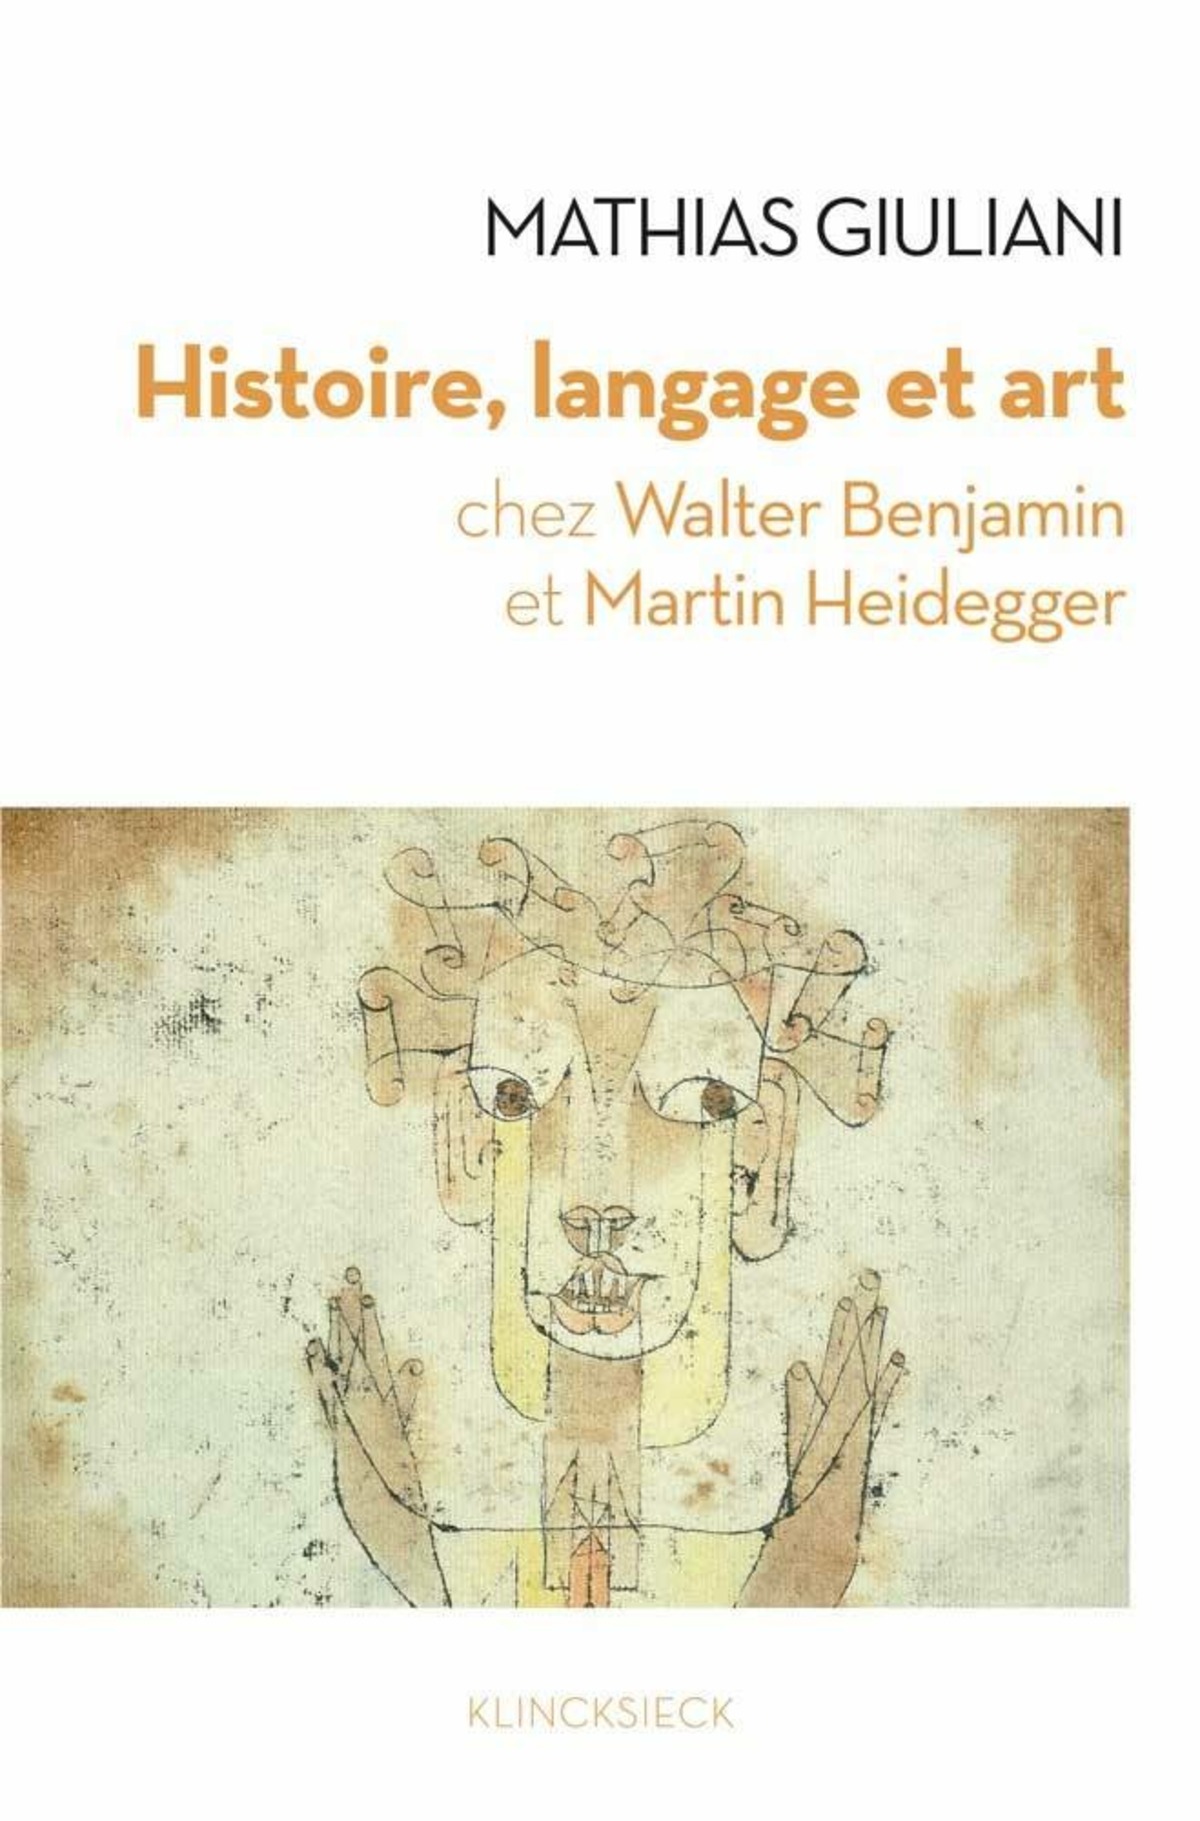 Histoire, langage et art chez Walter Benjamin et Martin Heidegger